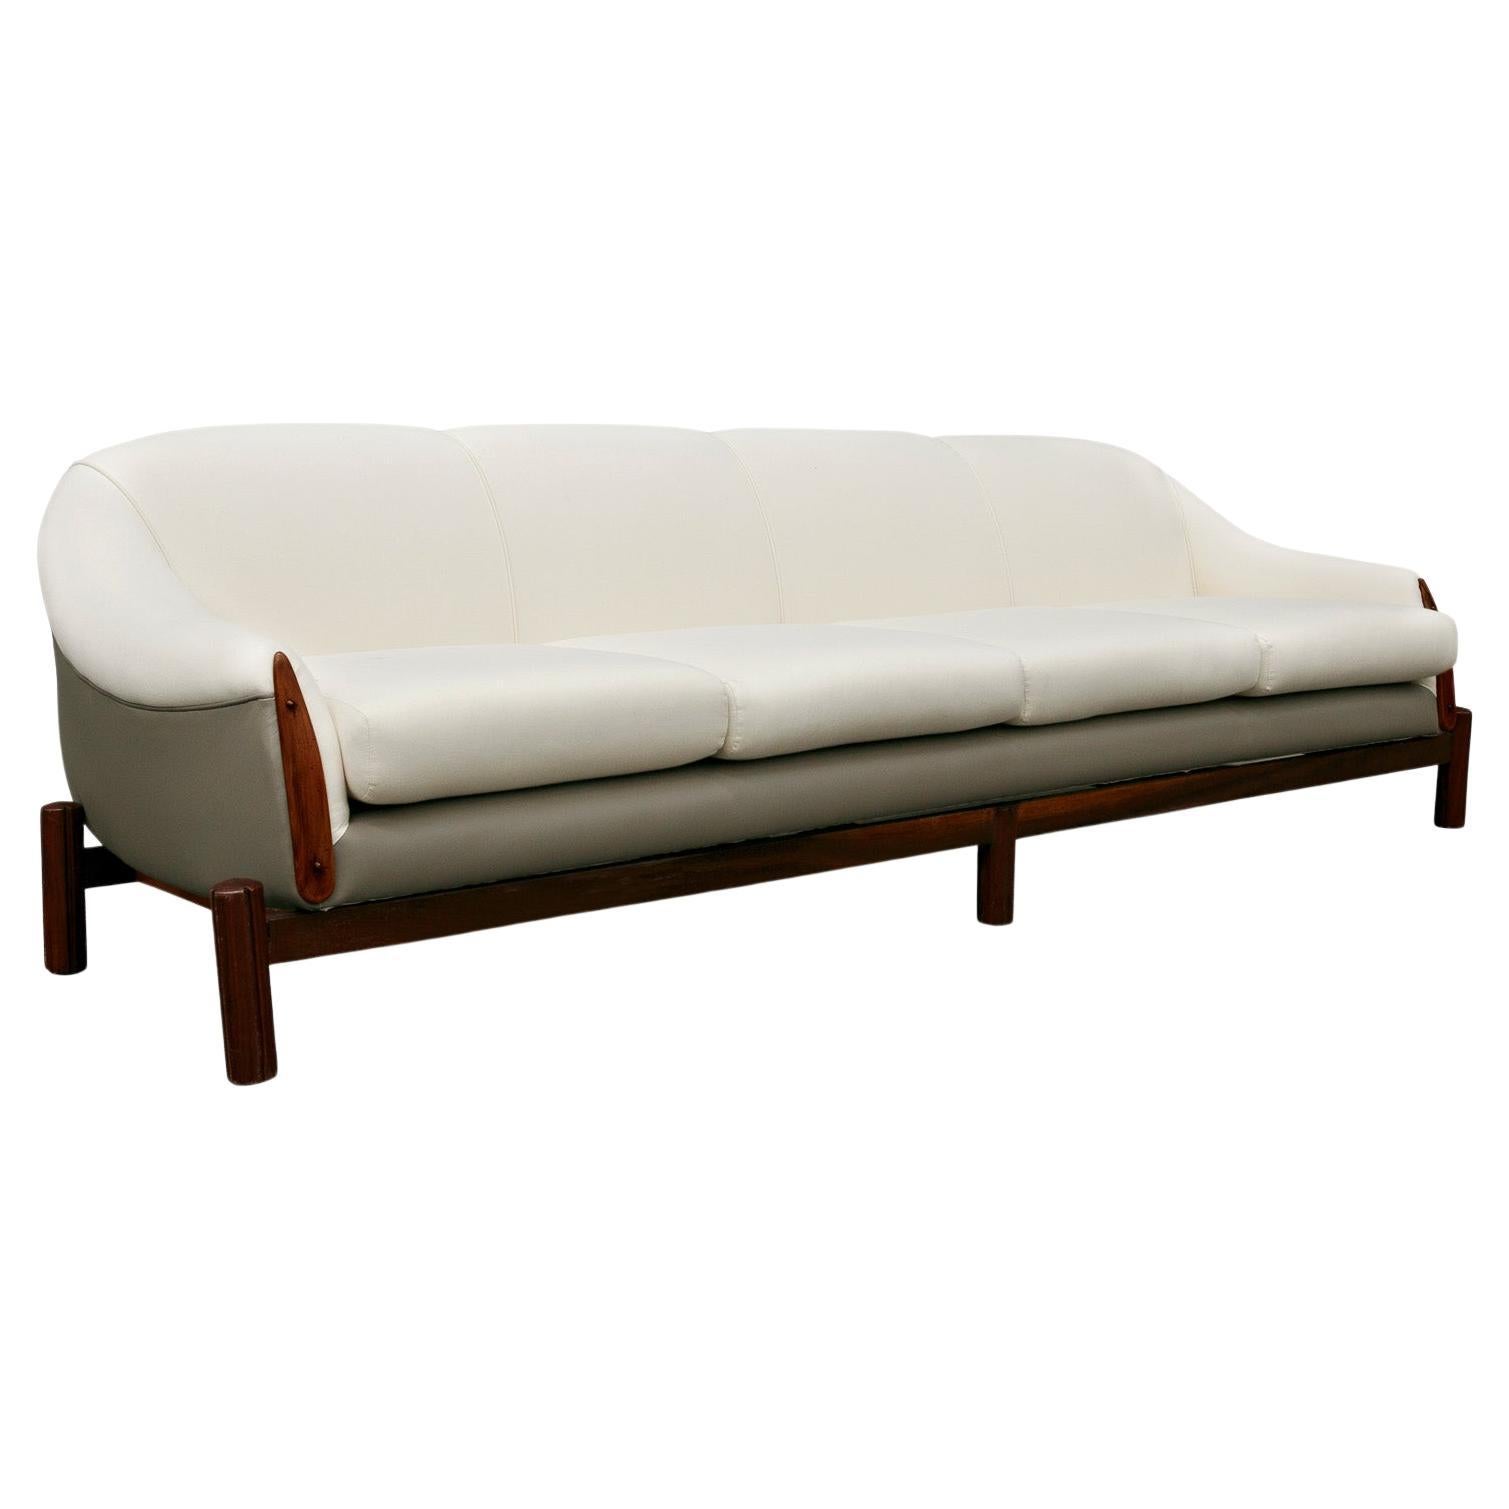 Dieses moderne brasilianische Sofa aus Hartholz, grauem Leder und weißem Stoff von Cimo aus den 1960er Jahren ist heute erhältlich und einfach fantastisch!

Dieses spektakuläre Sofa bietet Platz für vier Personen und verfügt über ein Gestell aus